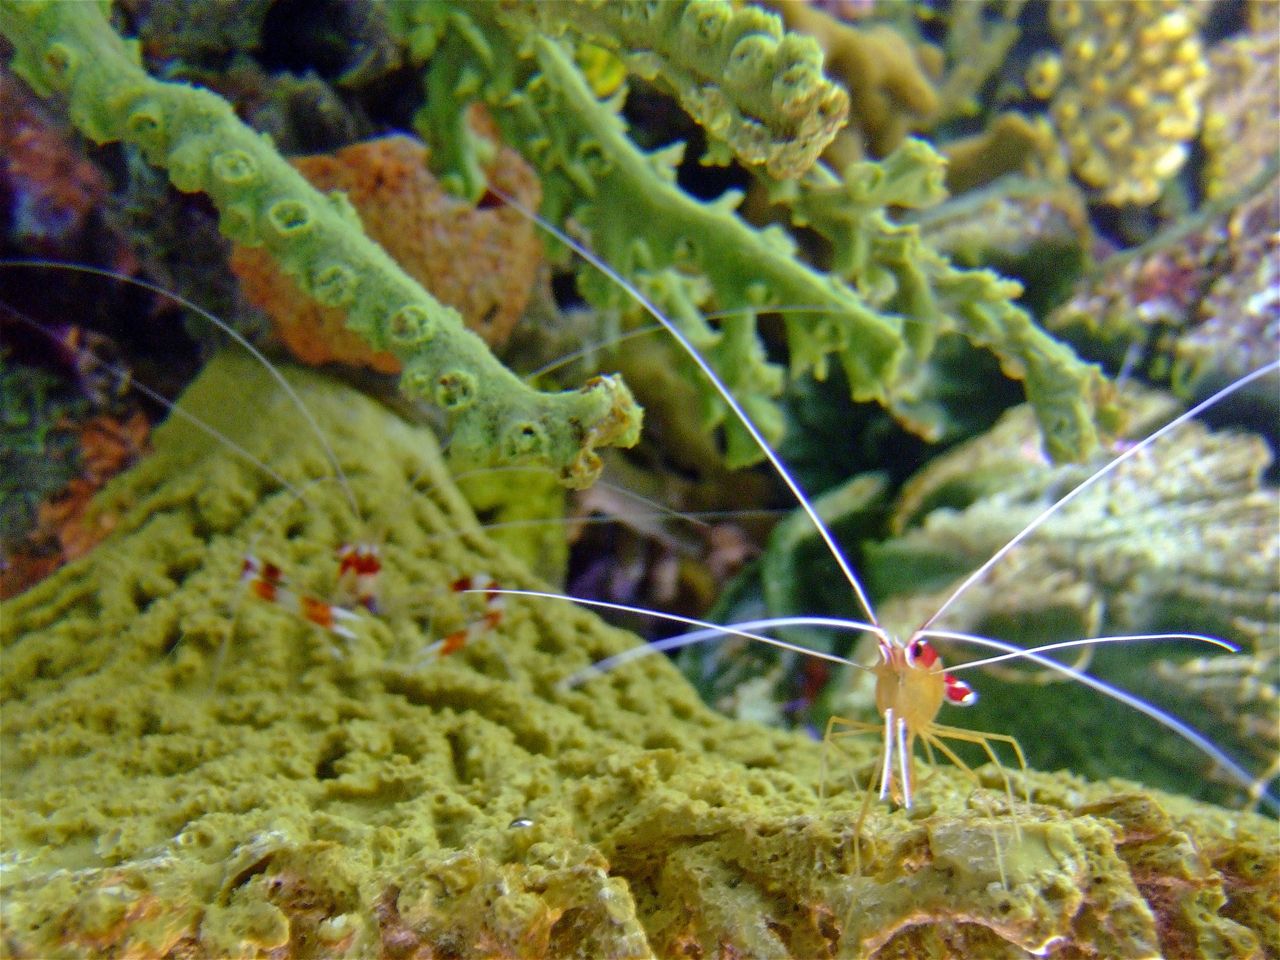 Oregon coast aquarium mantis shrimp